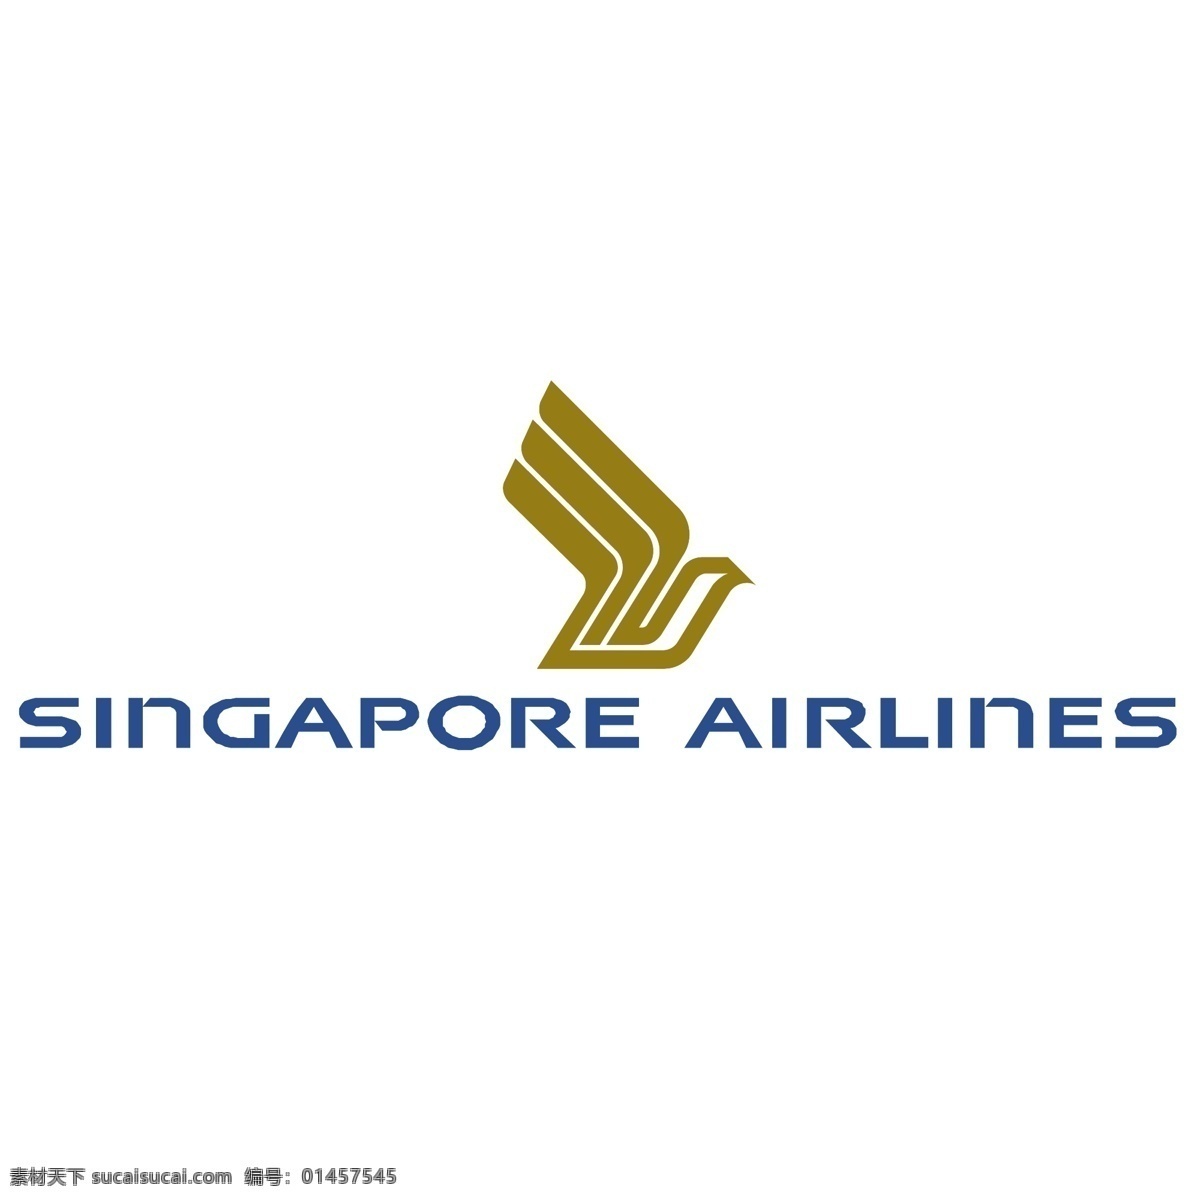 新加坡航空公司 自由 标志 标识 psd源文件 logo设计